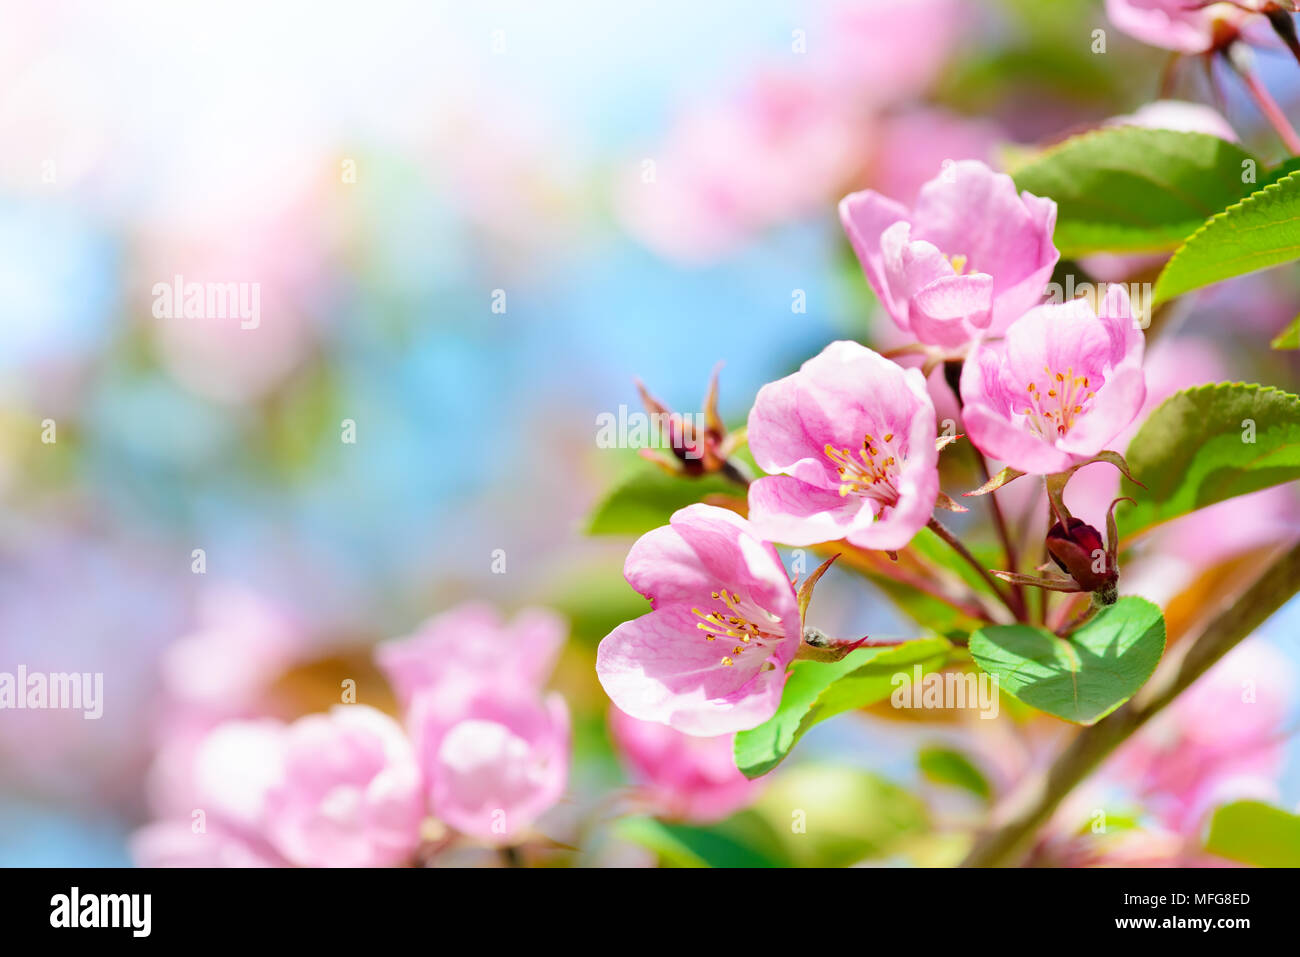 Pink apple Blumen, spring blossom Hintergrund mit Kopie Raum Stockfoto